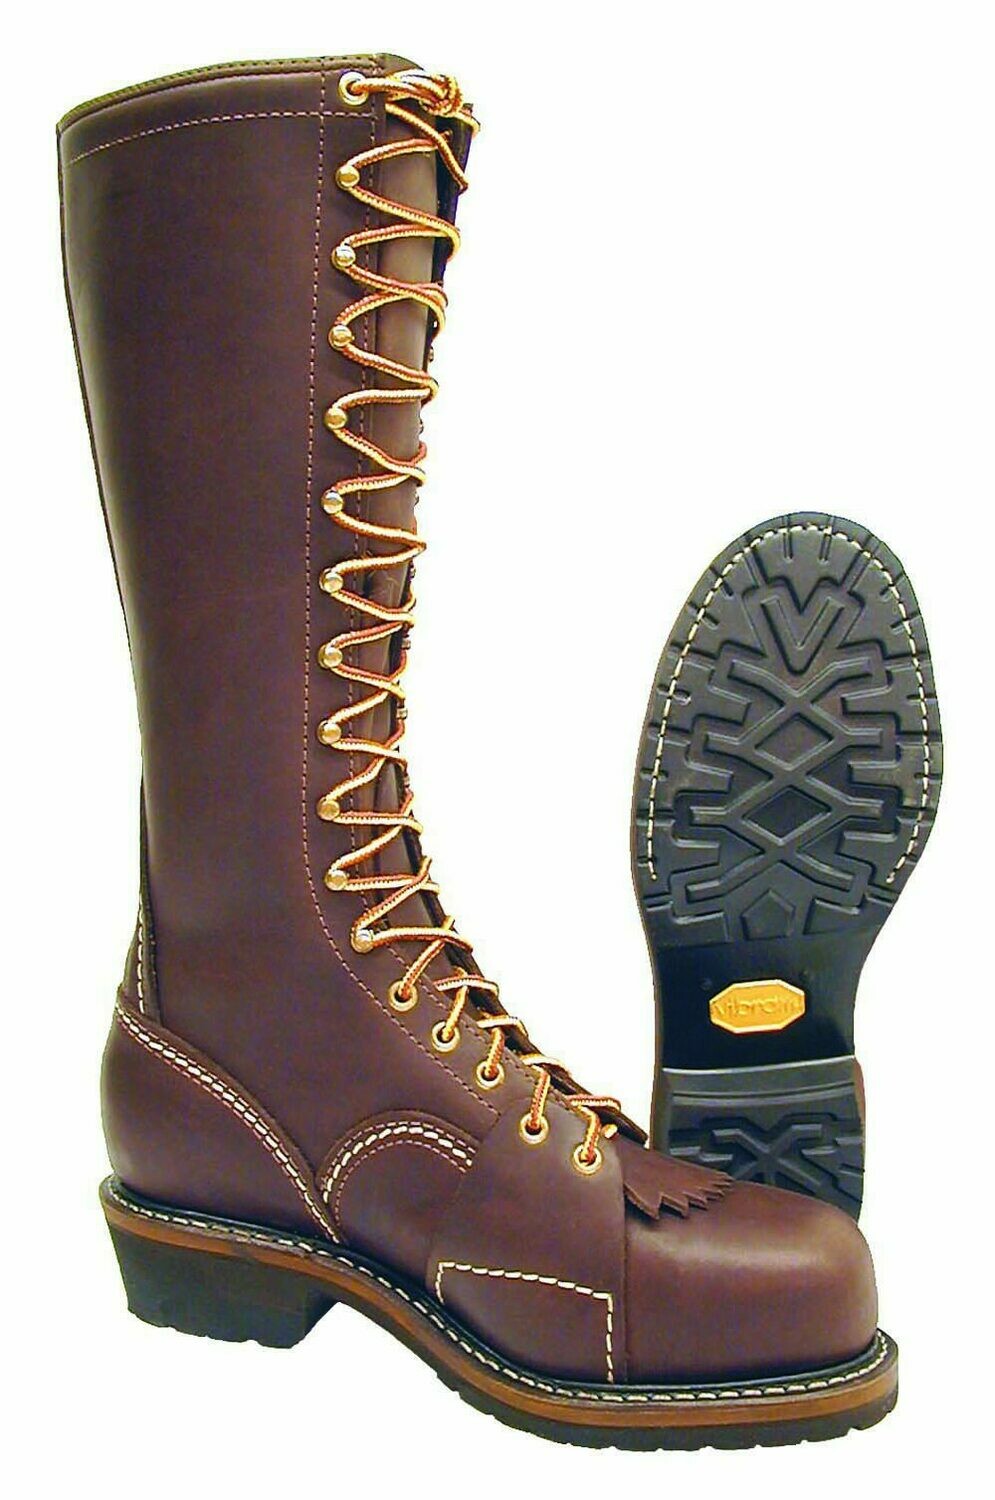 composite toe lineman boots